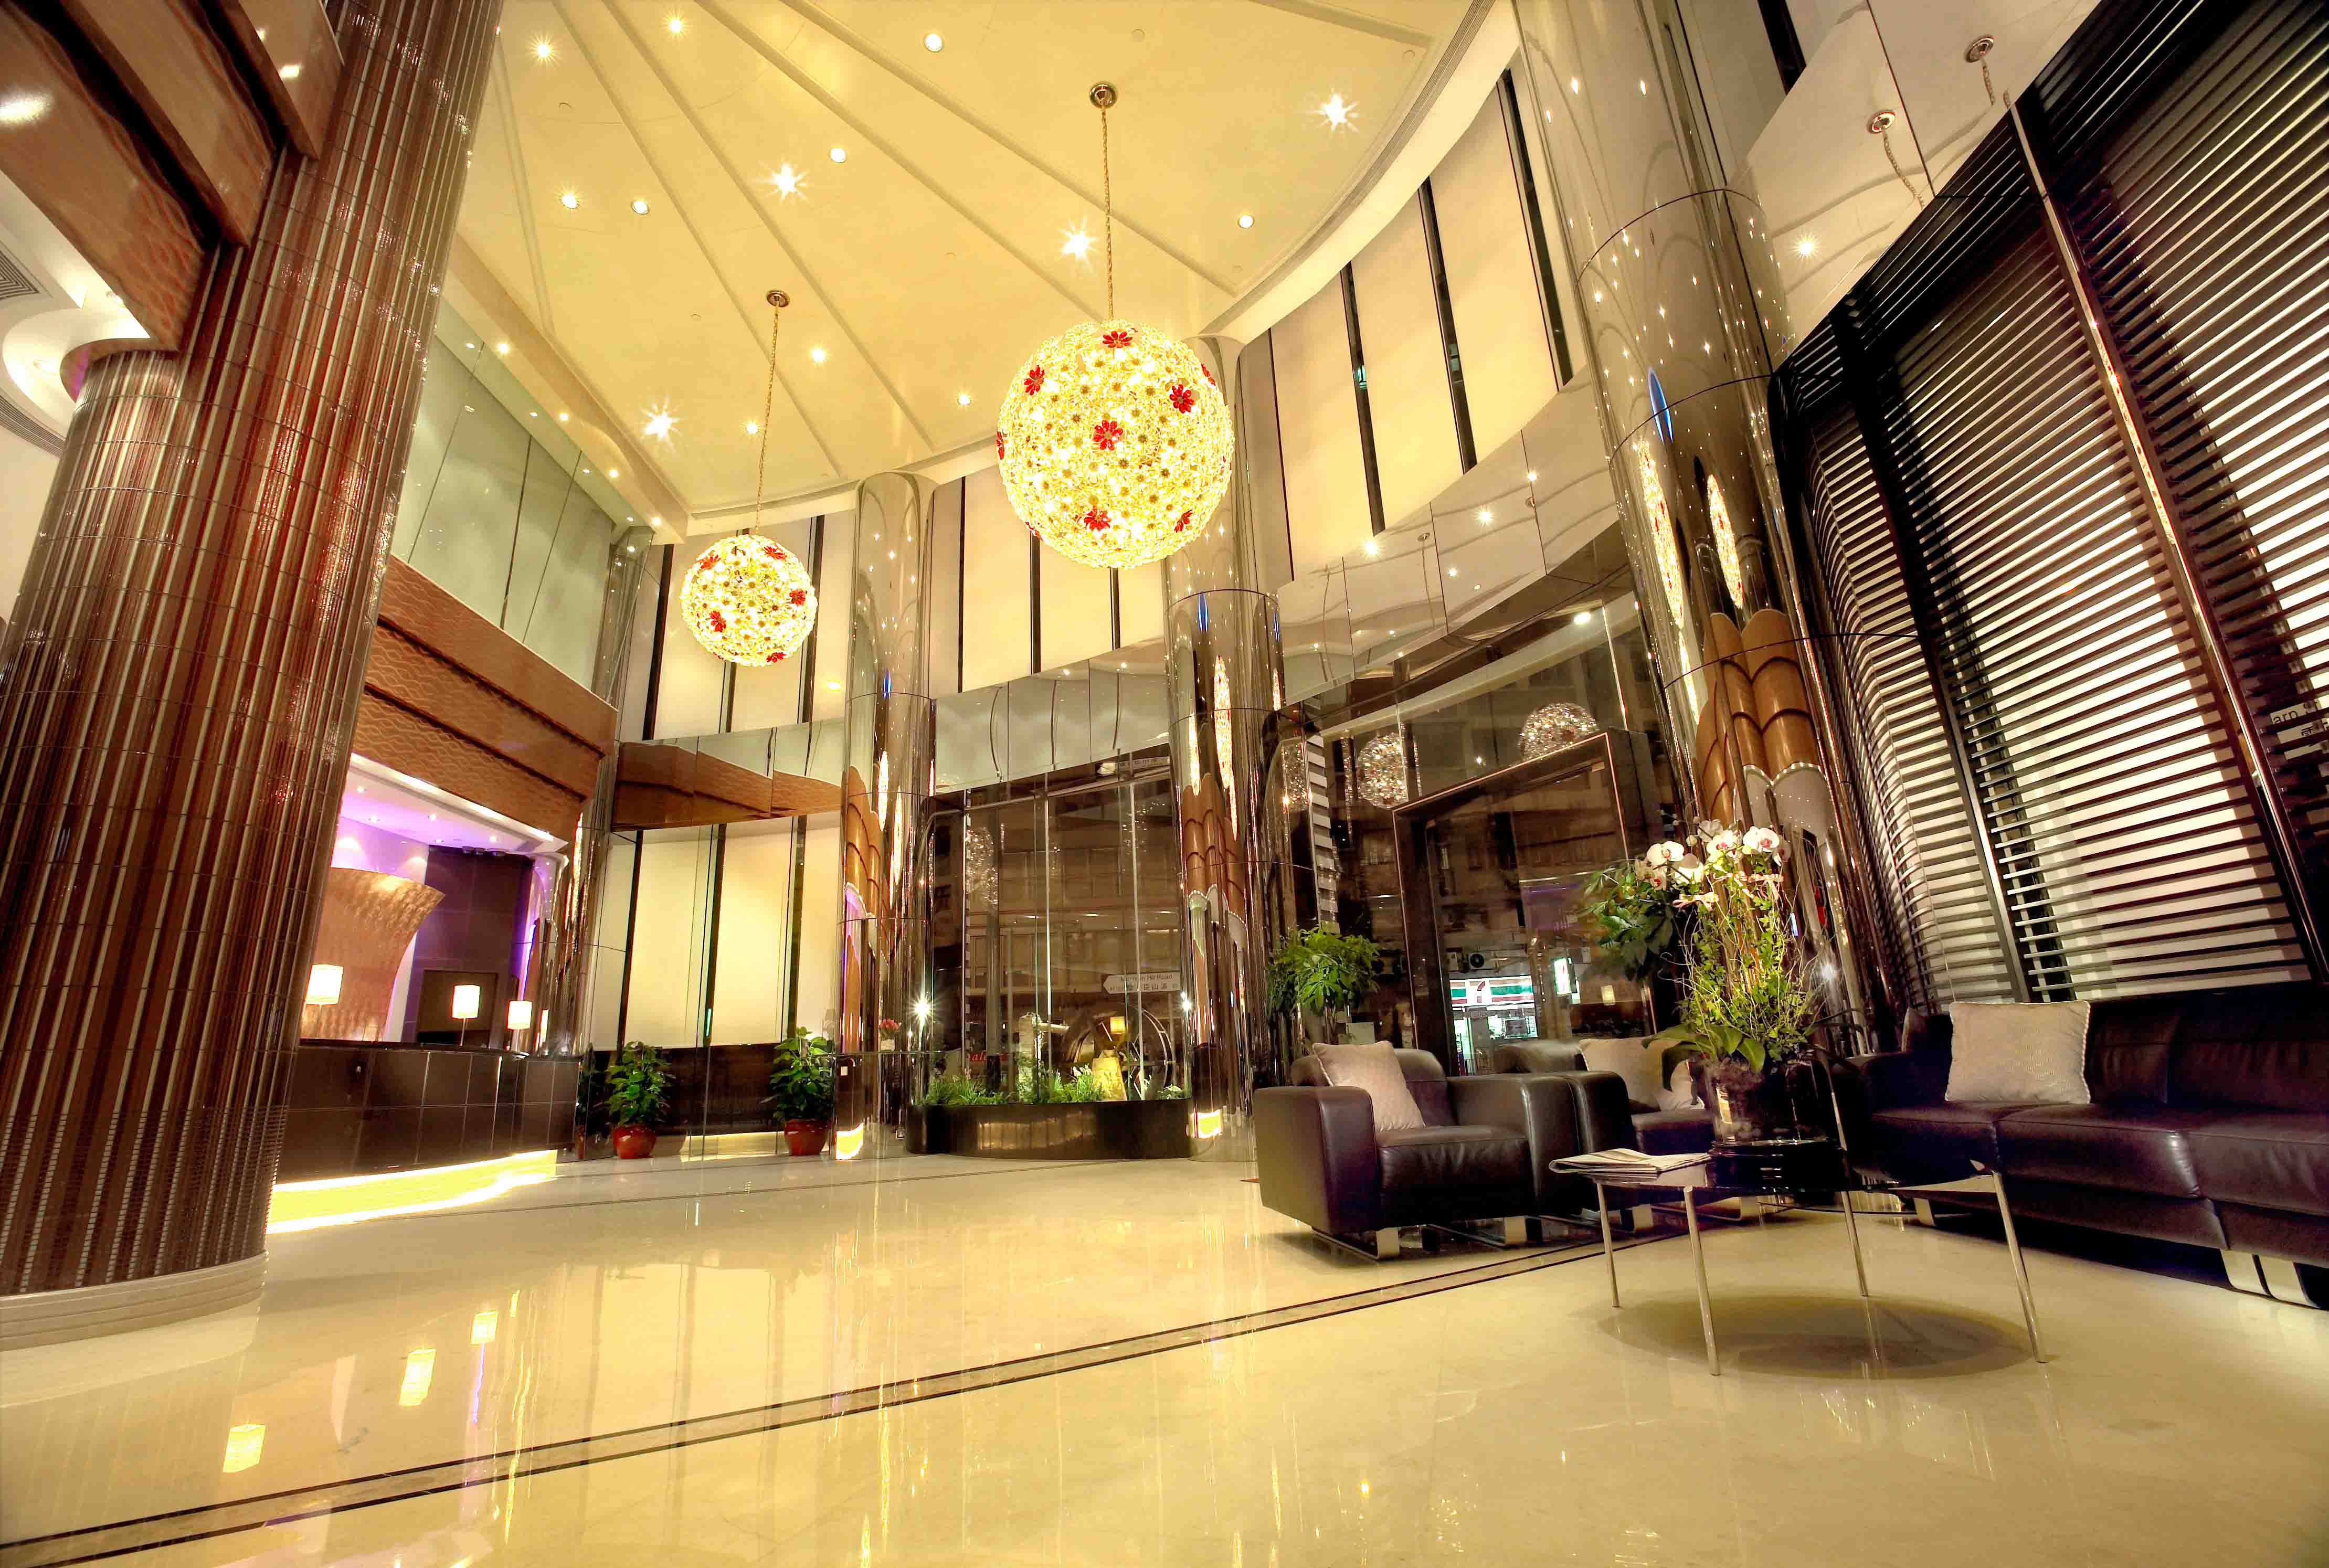 海逸酒店集团全新设计酒店品牌”历山酒店” 2020年亮相香港北角 | TTG BTmice